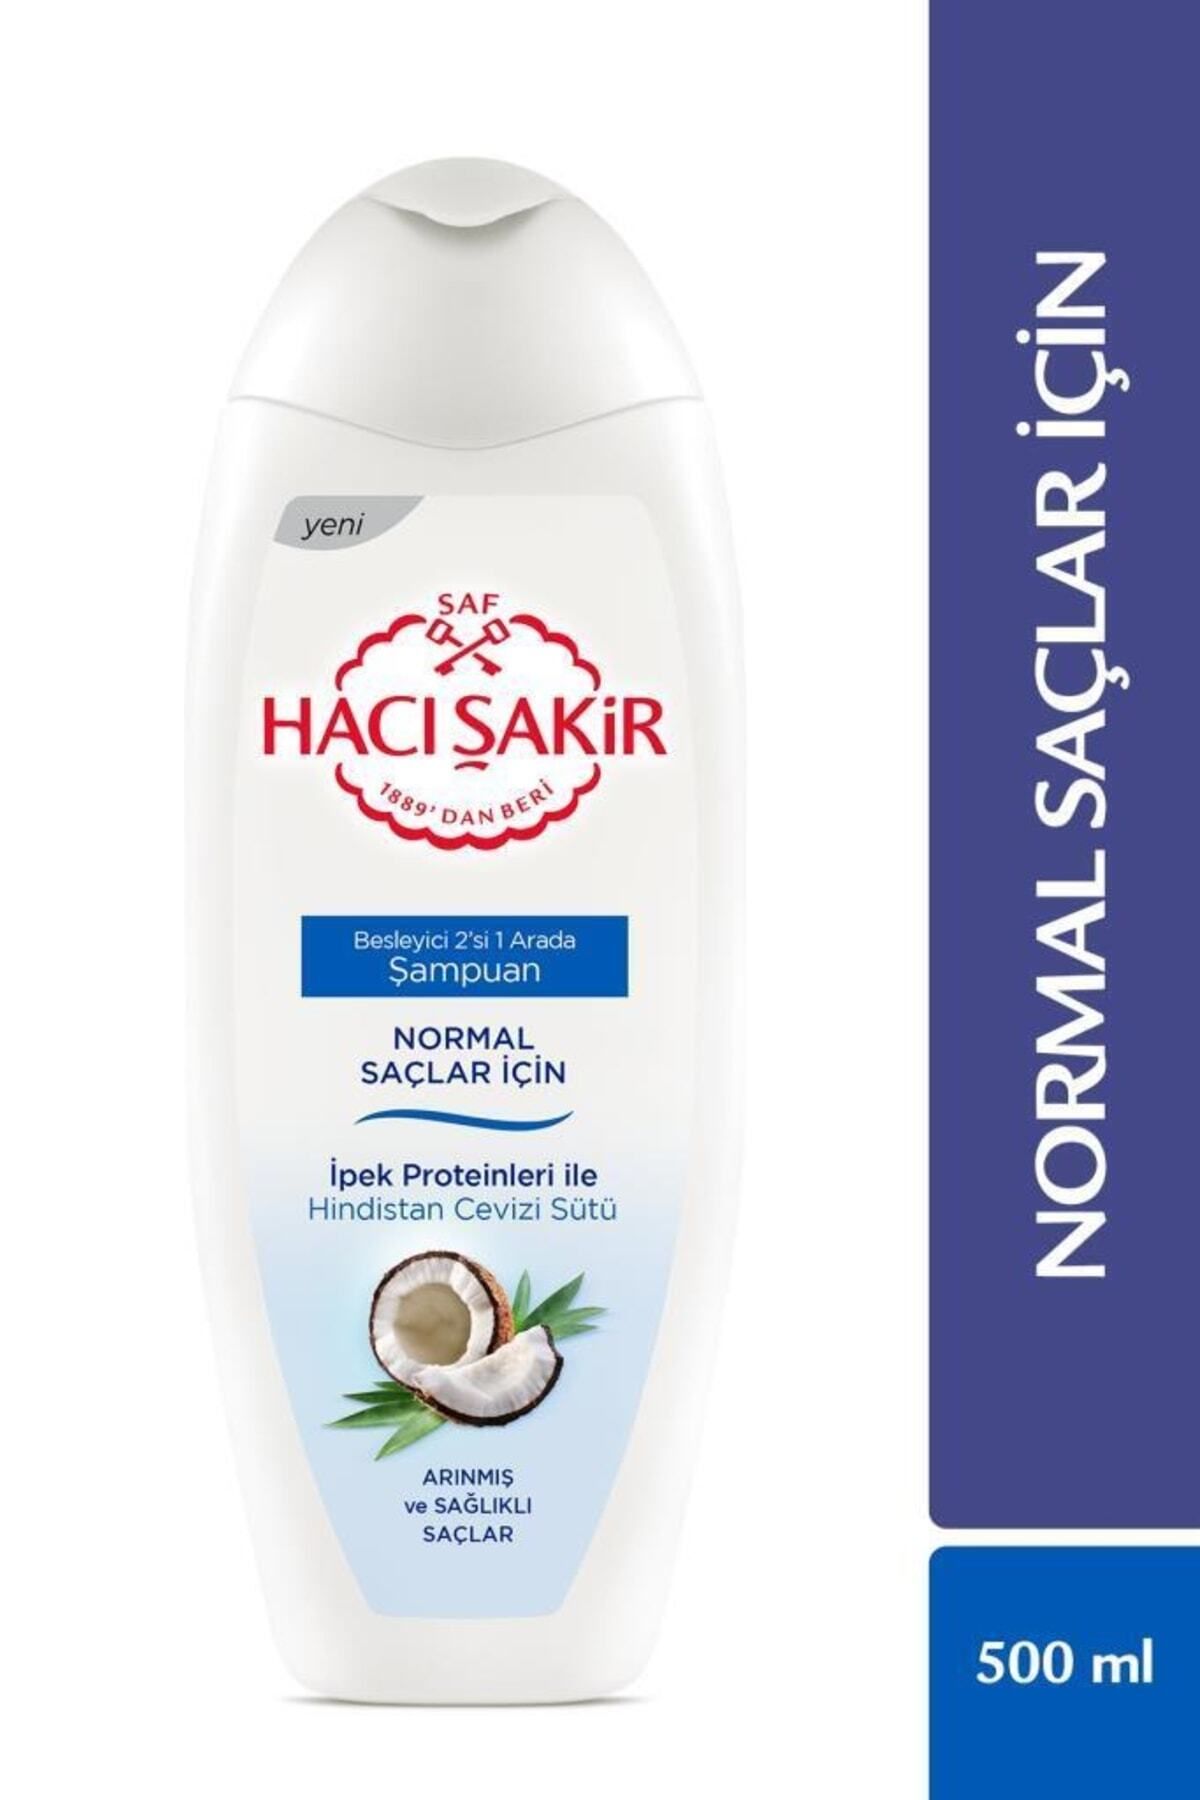 Hacı Şakir Normal Saçlar için Hindistan Cevizi Sütlü Besleyici 2'si 1 Arada Şampuan 500 ml